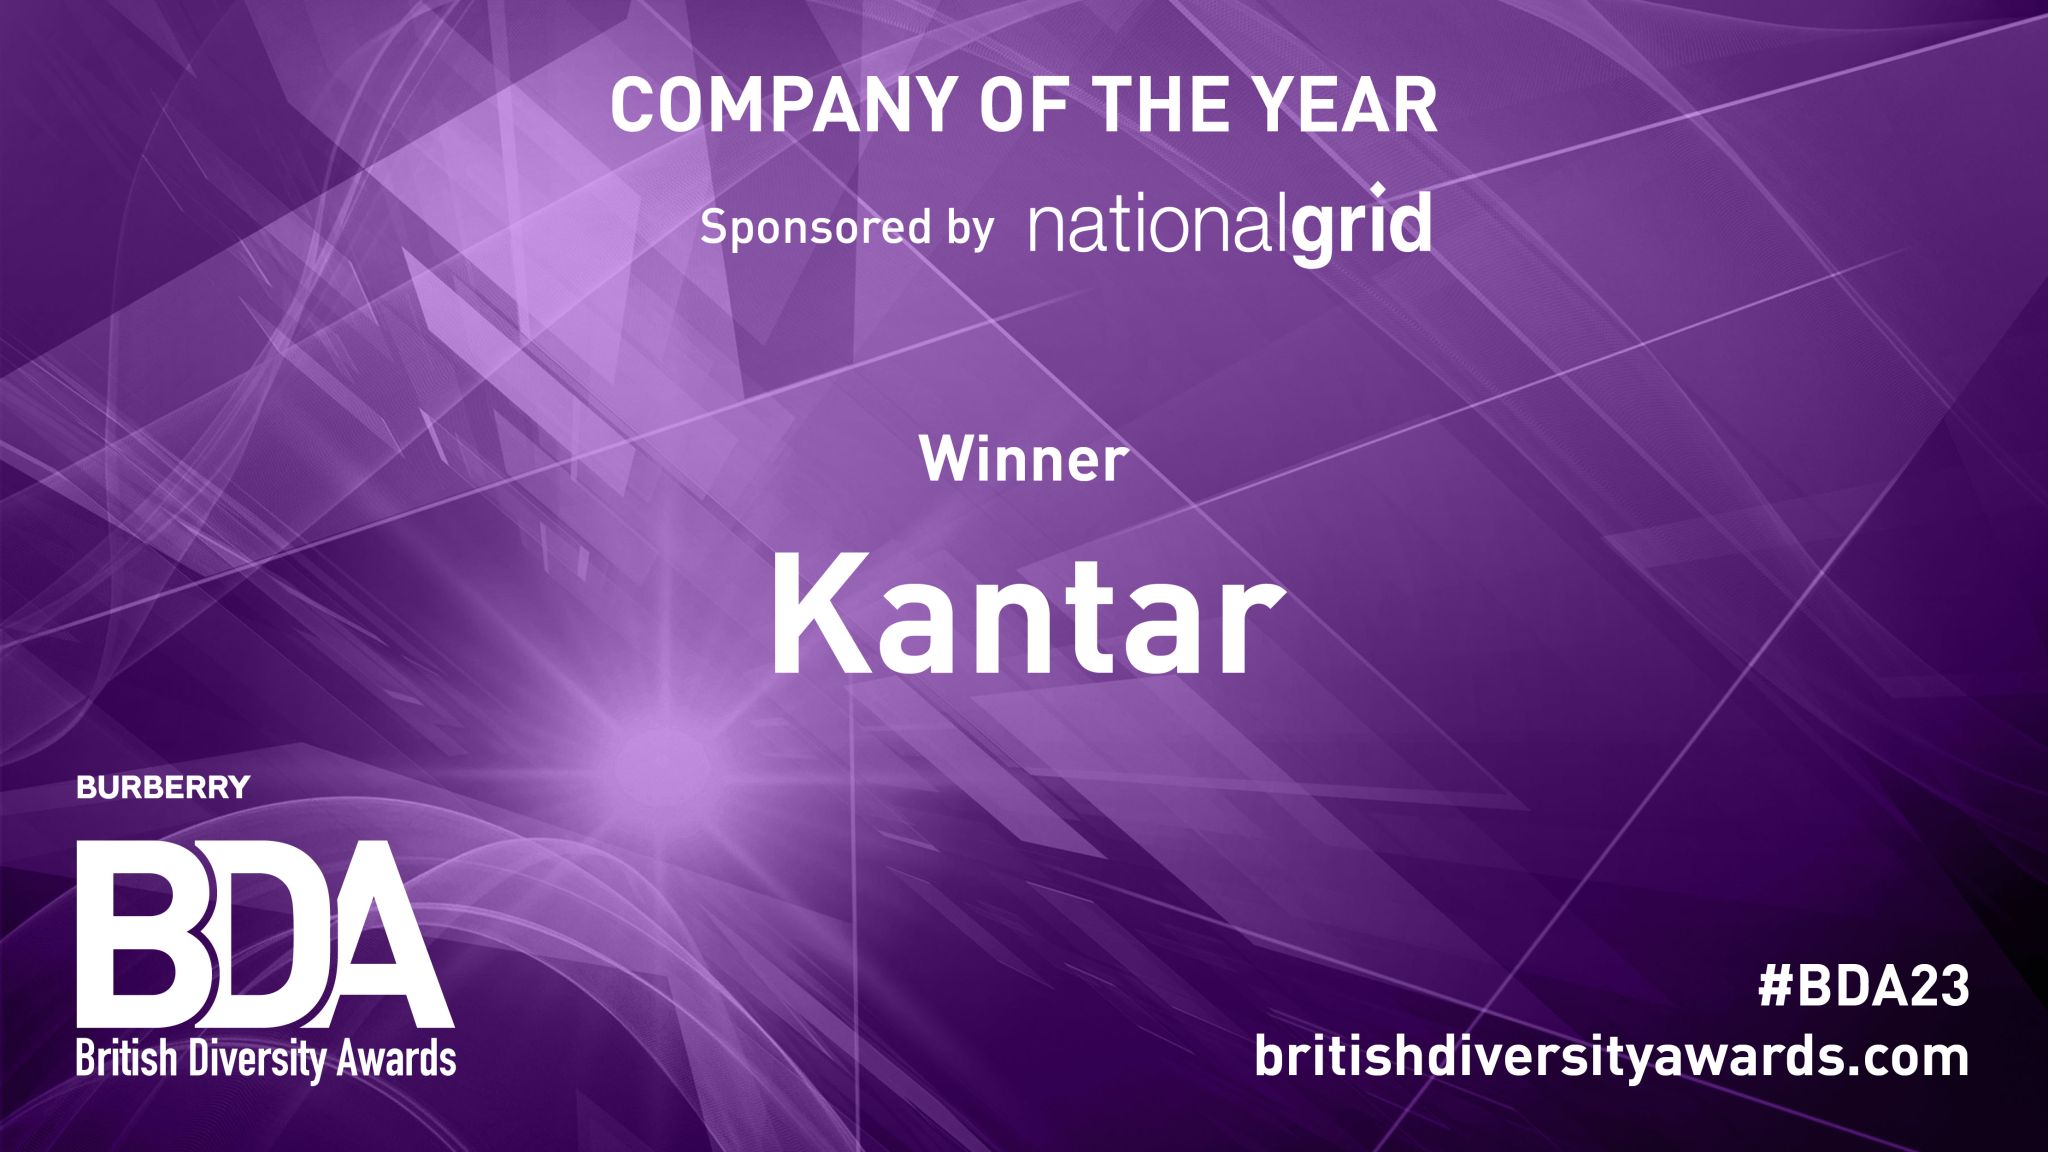 Fondo morado, texto blanco, anunciando a Kantar como ganadora del premio Empresa del Año 2023 en los British Diversity Awards, patrocinados por National Grid. 